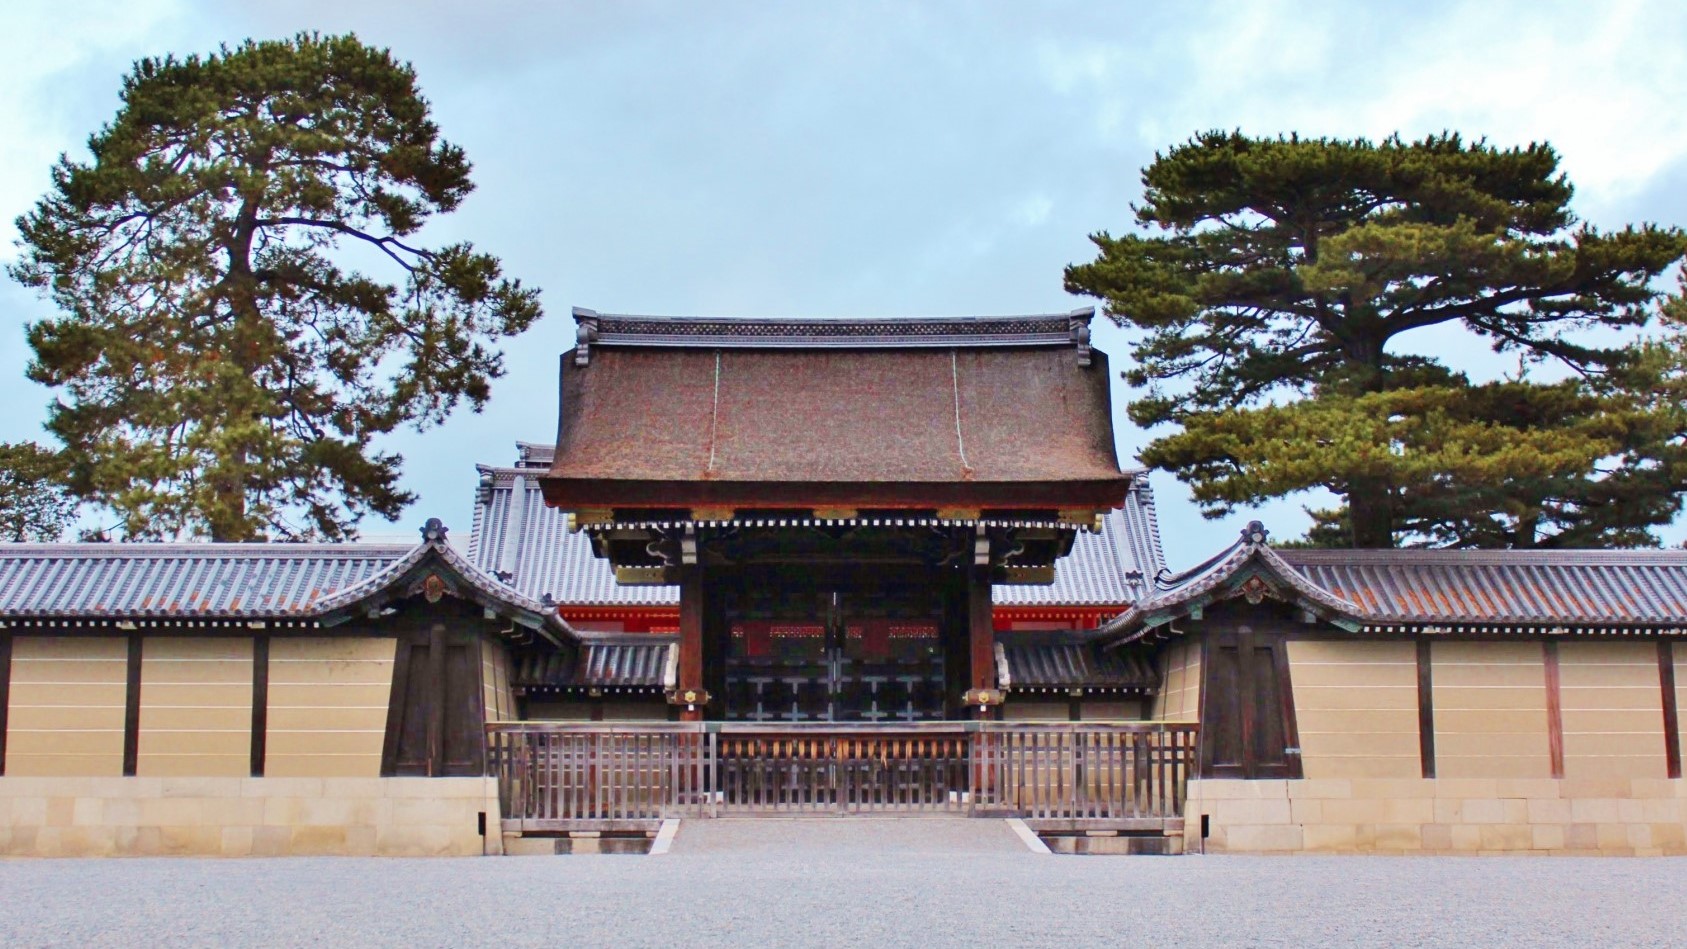 ■京都御所■平安時代から千年以上にわたり天皇がお住まいになり政事が執られた京都御所。